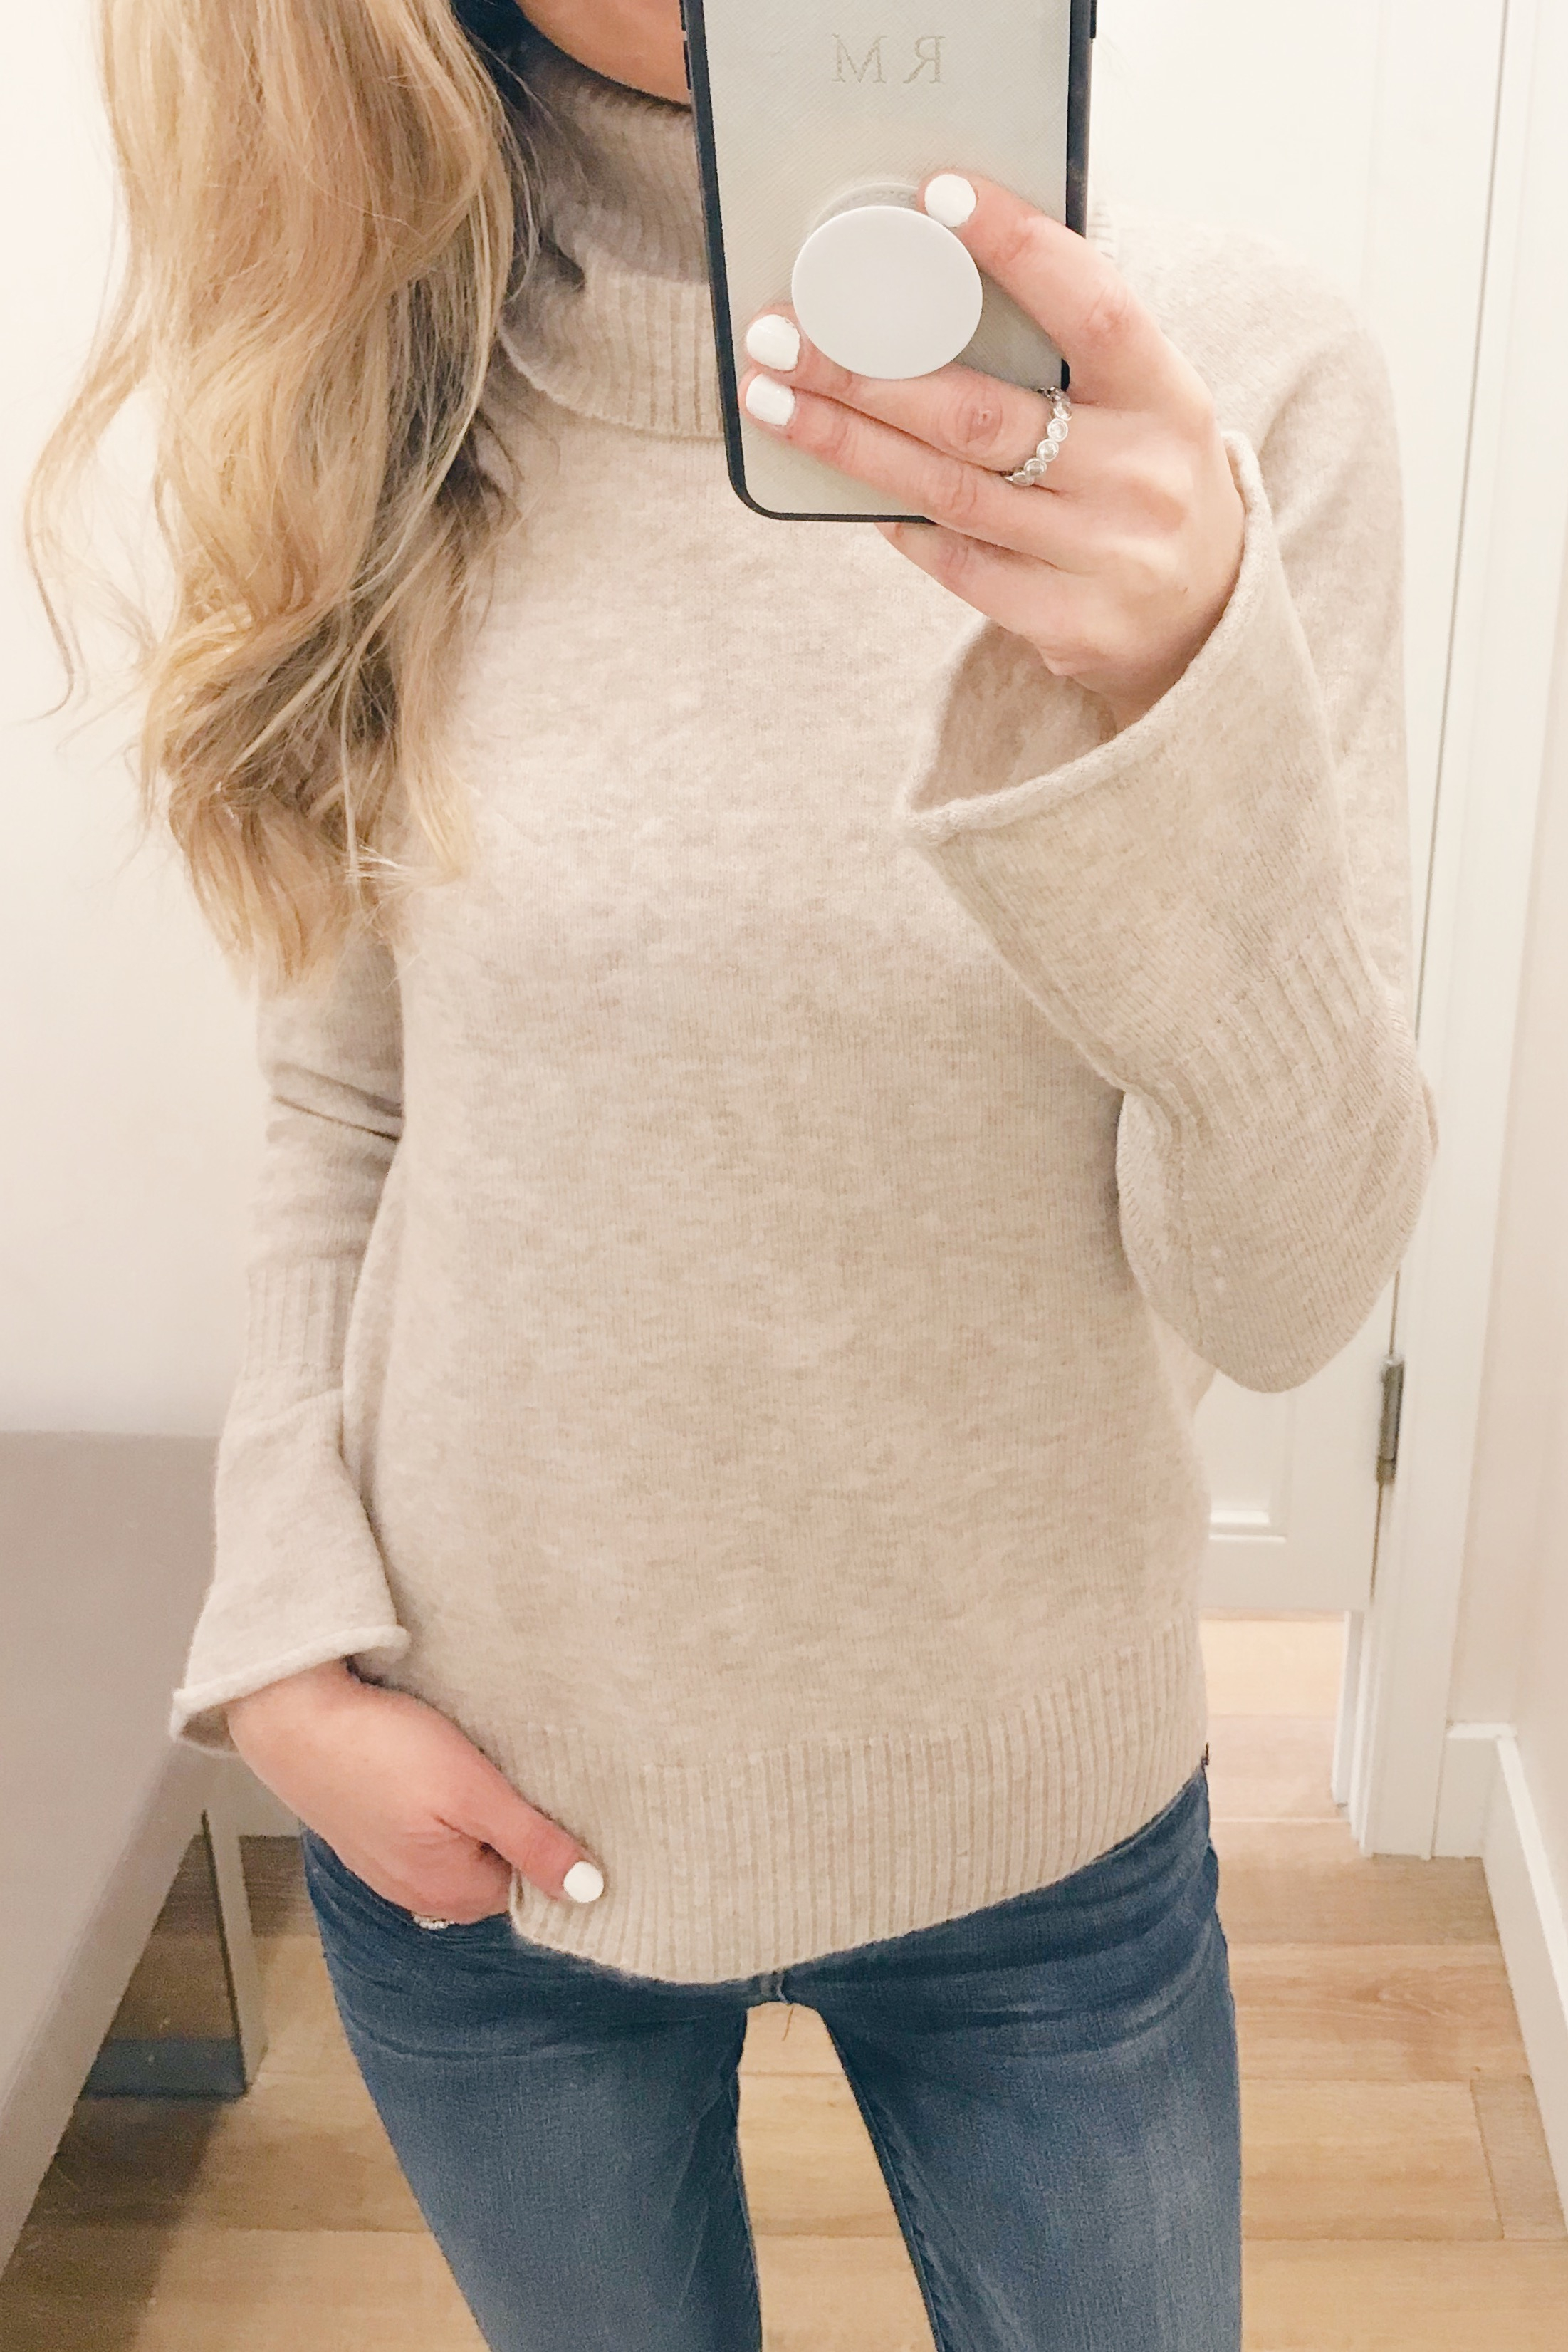 Pre Christmas Weekend Sales - Bell Sleeve Turtleneck sweater